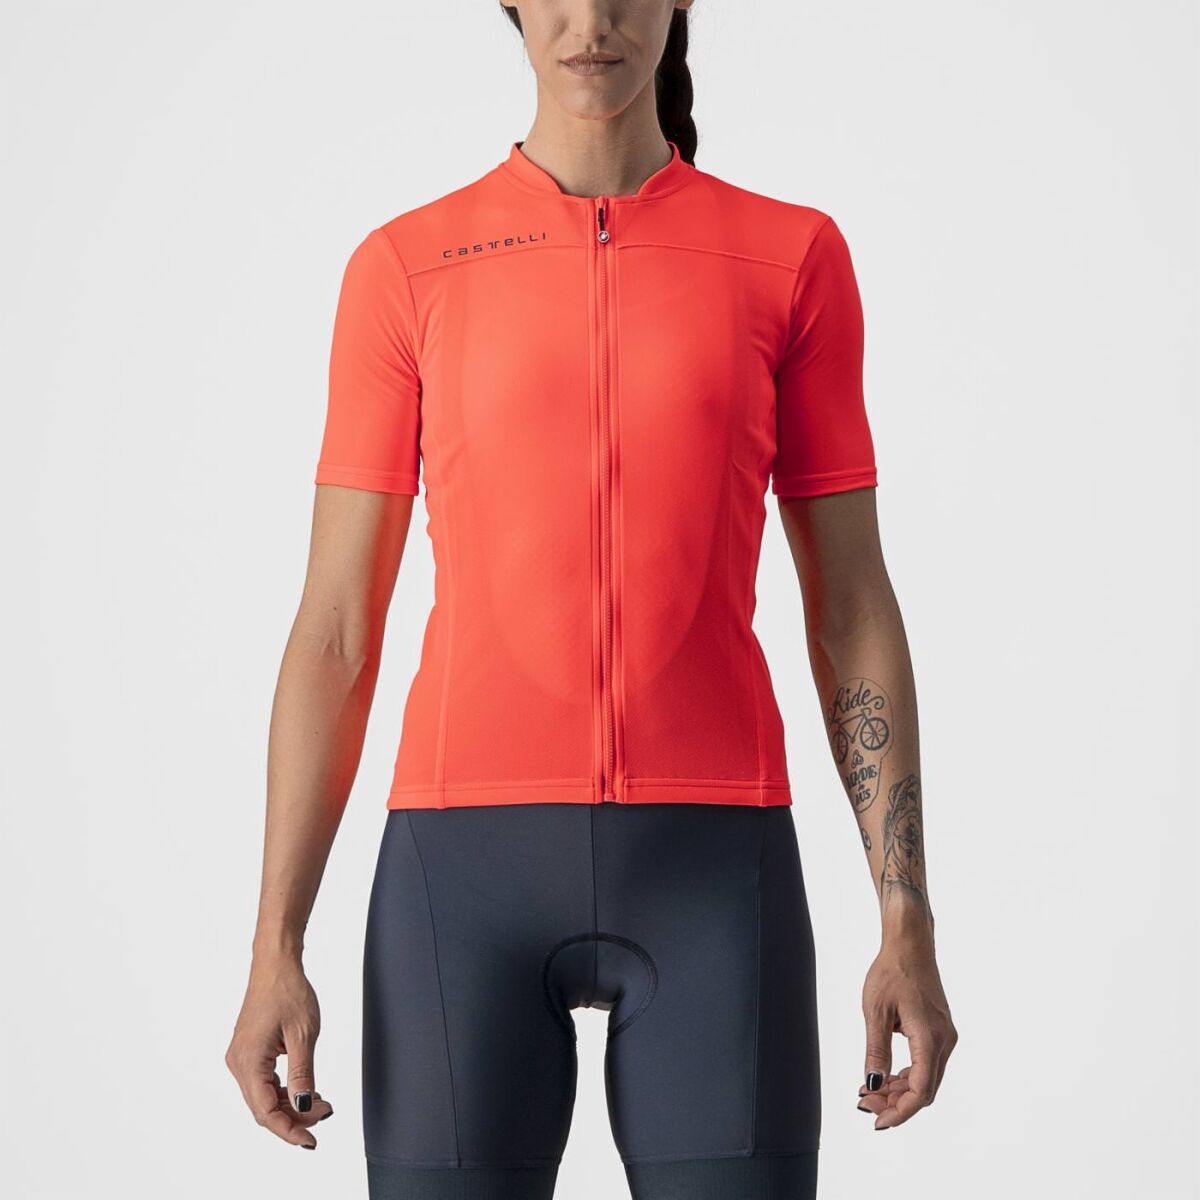 Castelli Anima 3 Jersey - Cycling jersey - Women's